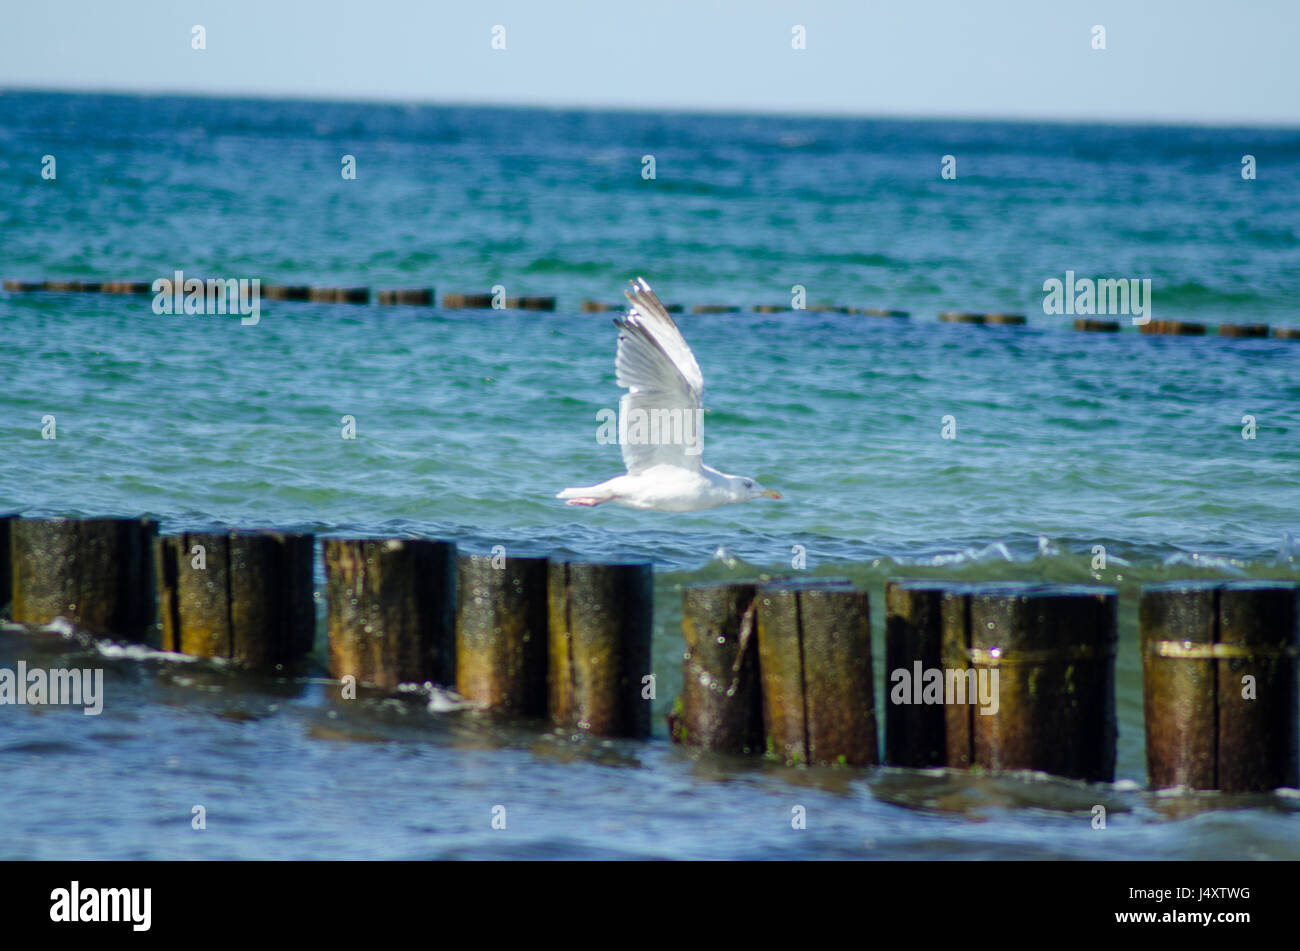 Seagull flying over tidal groins Stock Photo